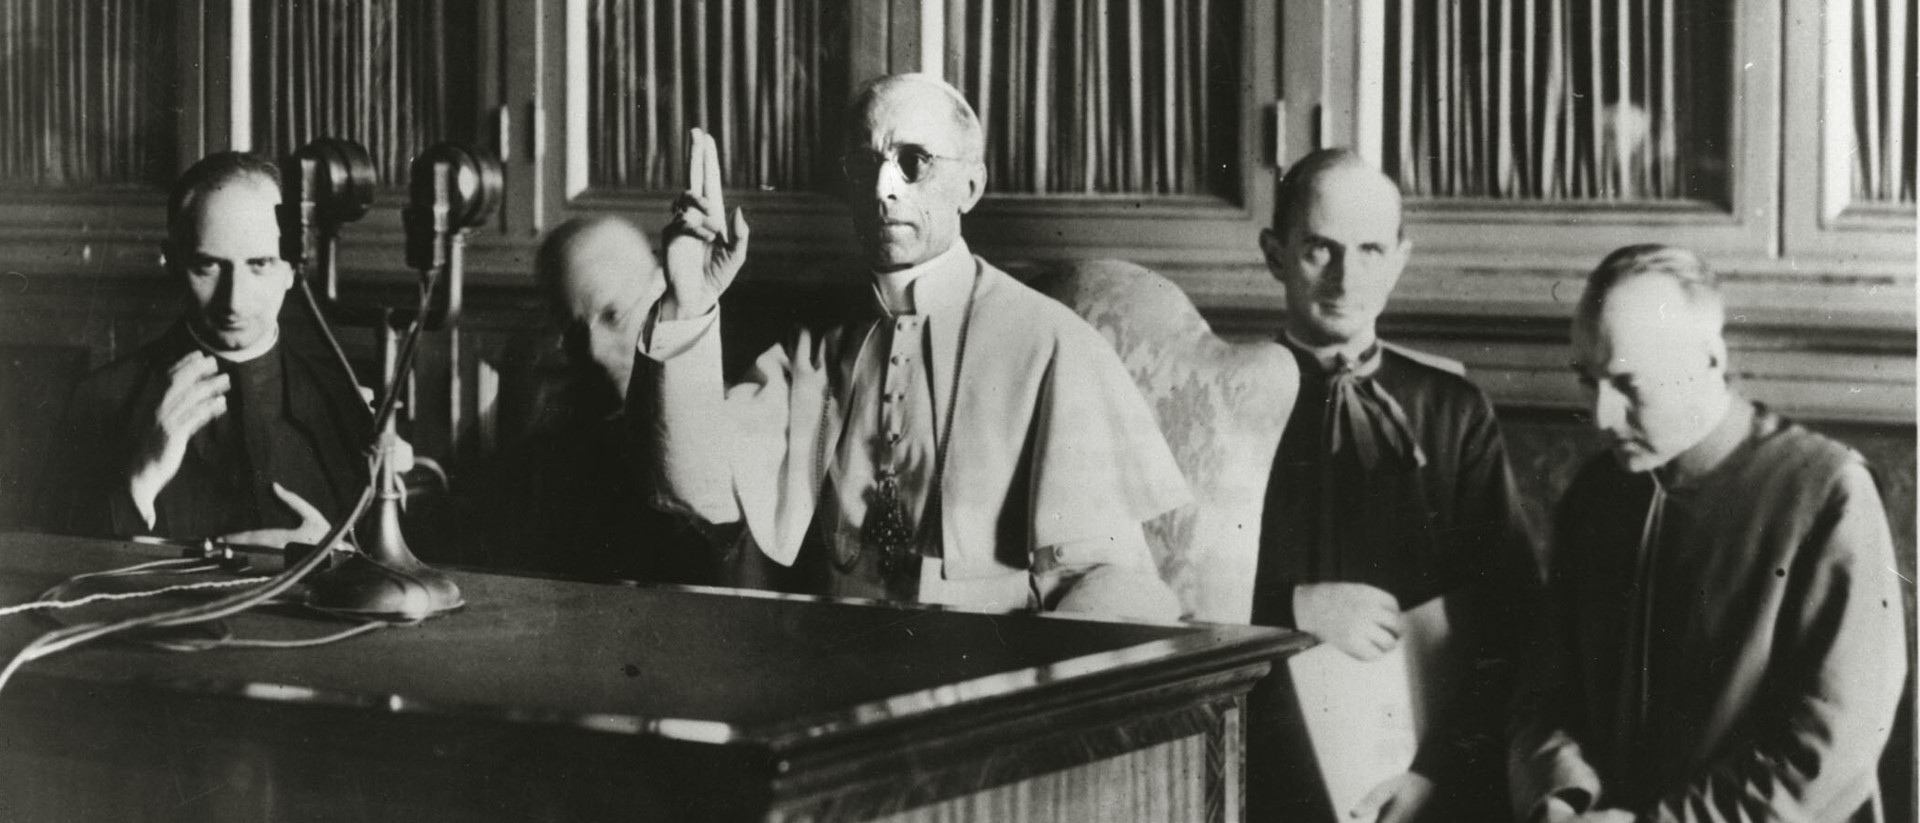 Papst Pius XII. während einer Radioansprache im Jahr 1941 im Vatikan.